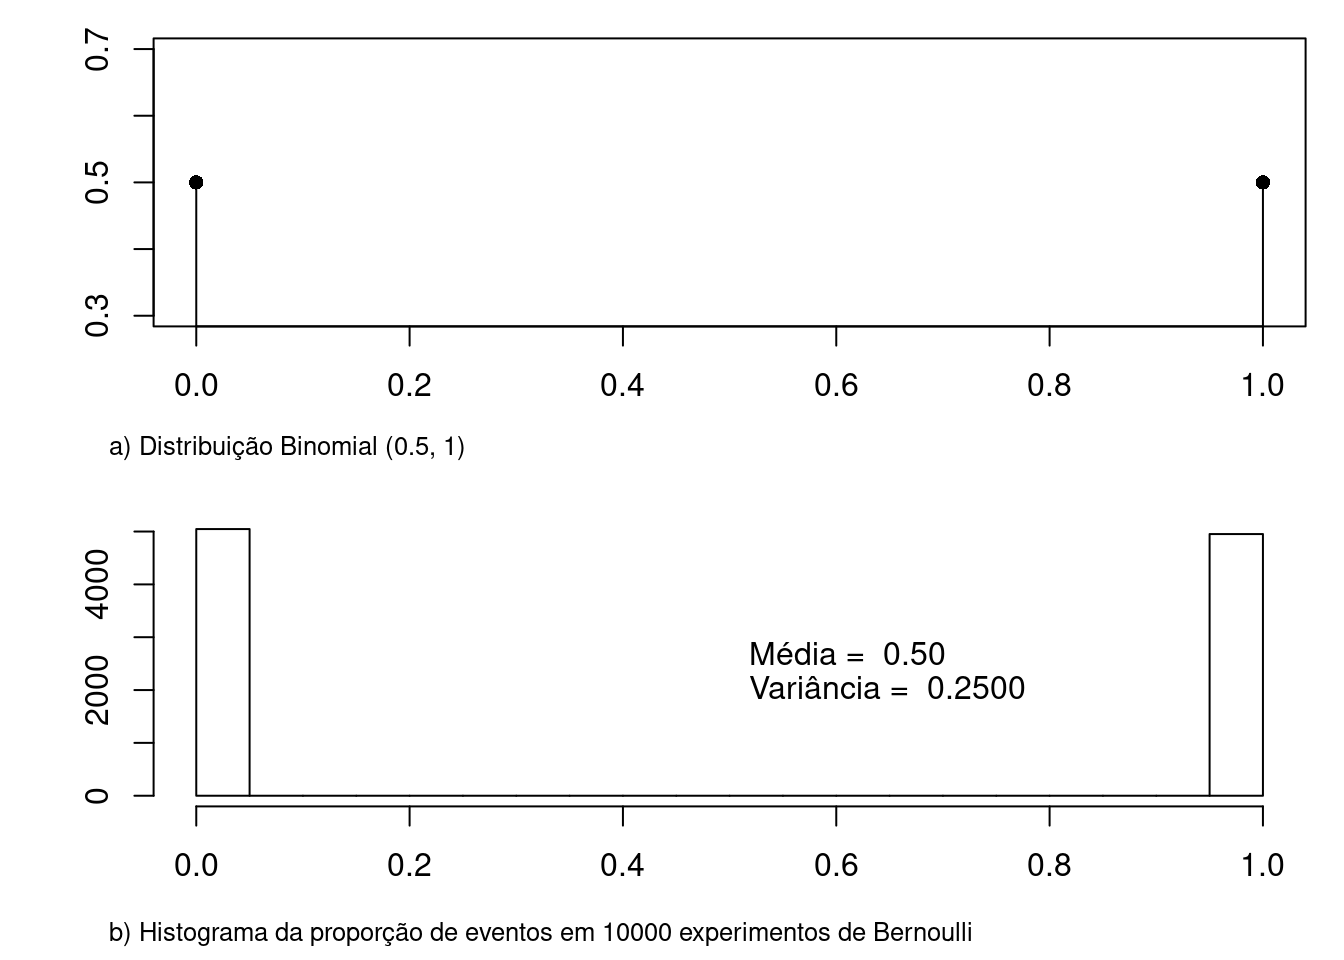 a) gráfico da distribuição binomial para p  = 0,5 e n = 1; b) histograma da proporção de eventos em 1 experimento de Bernoulli (p = 0,5). O histograma foi construído a partir de 10000 repetições do experimento de Bernoulli. A média da proporção de eventos foi de 0,5 e a variância 0,25, sendo os valores teóricos iguais a 0,5 e 0,25, respectivamente